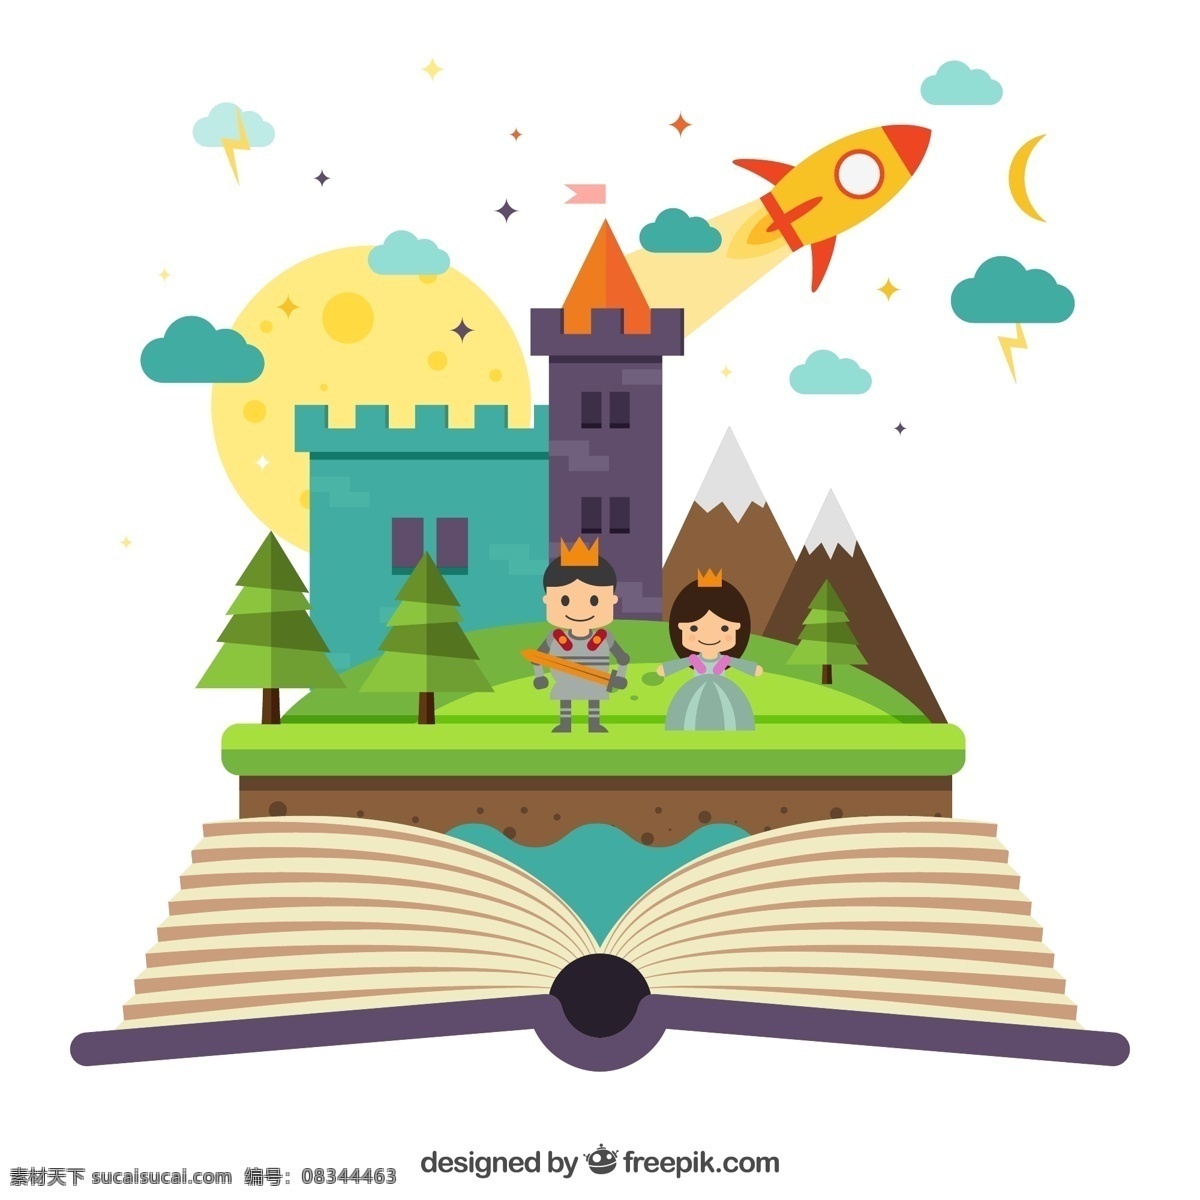 打开 书本 中 童话 世界 矢量 火箭 王子 公主 雪山 树木 月亮 云朵 城堡 立体书 矢量图